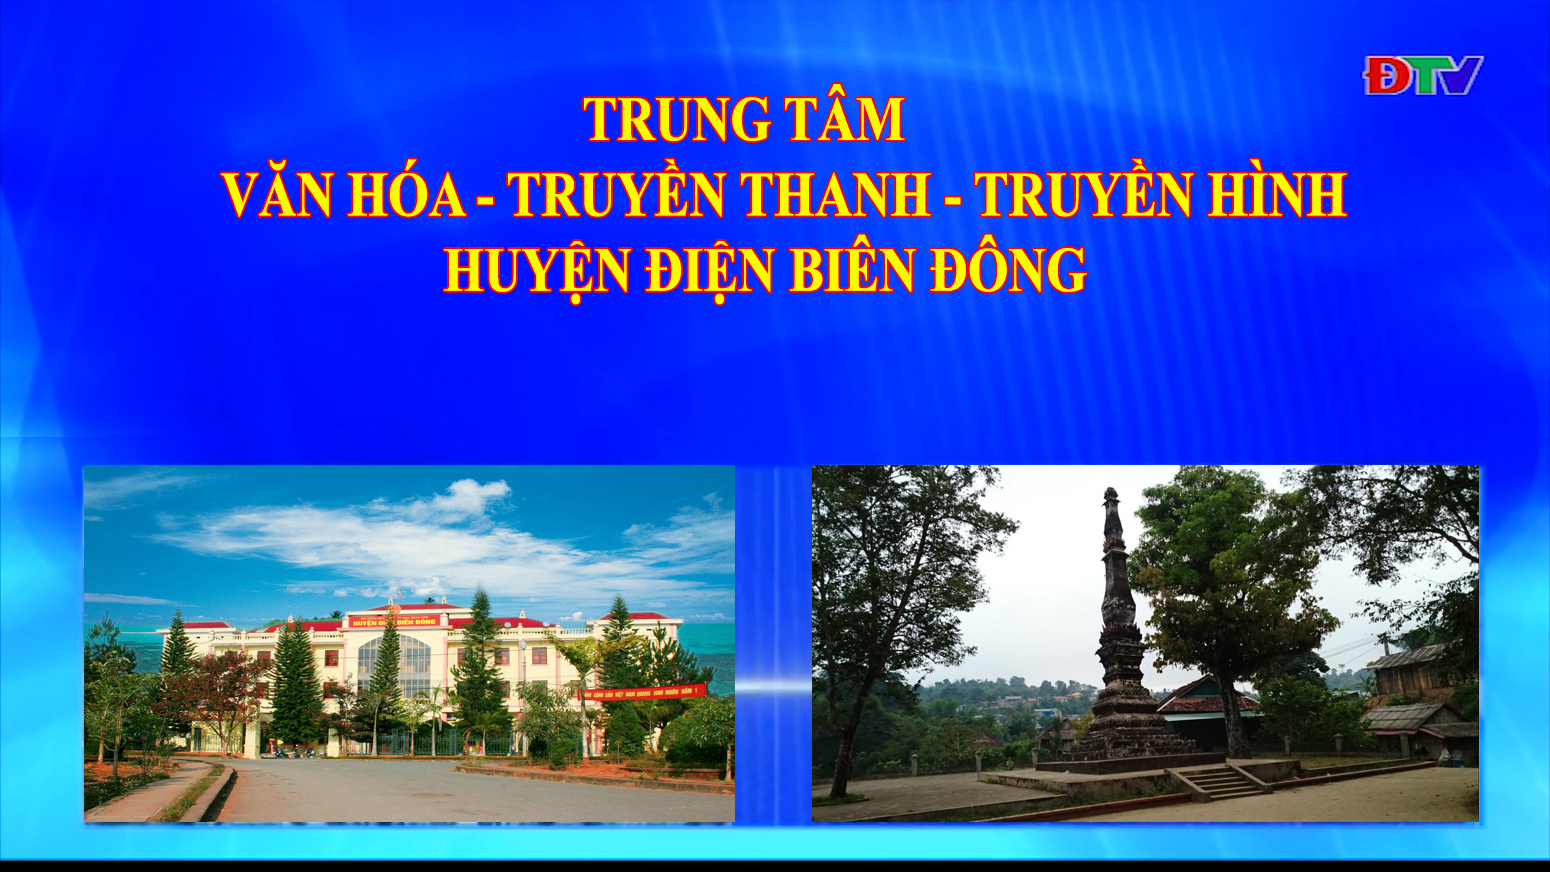 Trung tâm VH-TTTH huyện Điện Biên Đông (Ngày 14-11-2020)